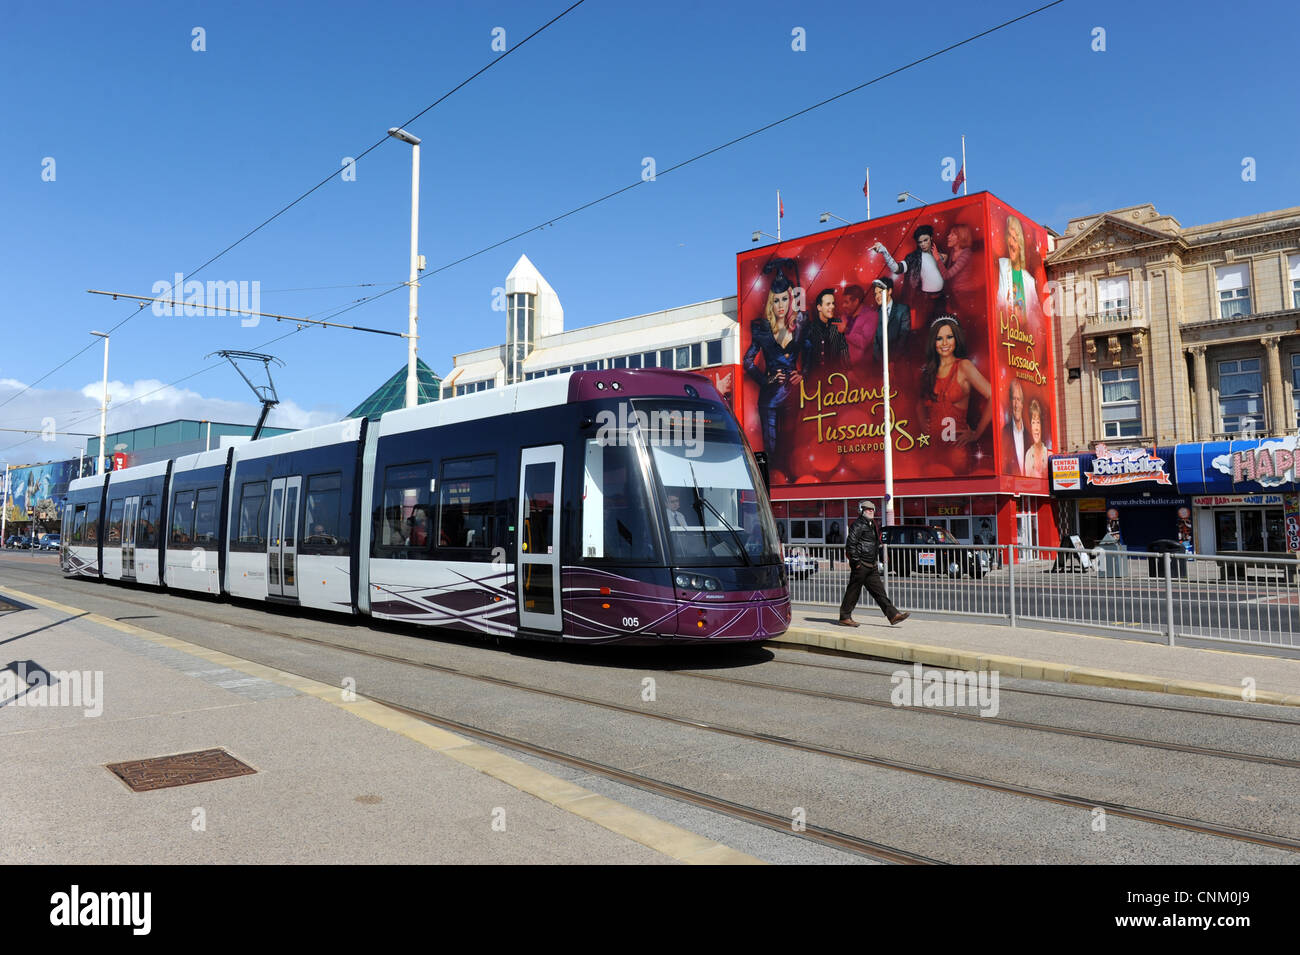 Eine neue Blackpool Straßenbahn am Hauptbahnhof Pier in Blackpool Uk ging die neuen Bombardier-Straßenbahnen in Betrieb April 2012 Stockfoto